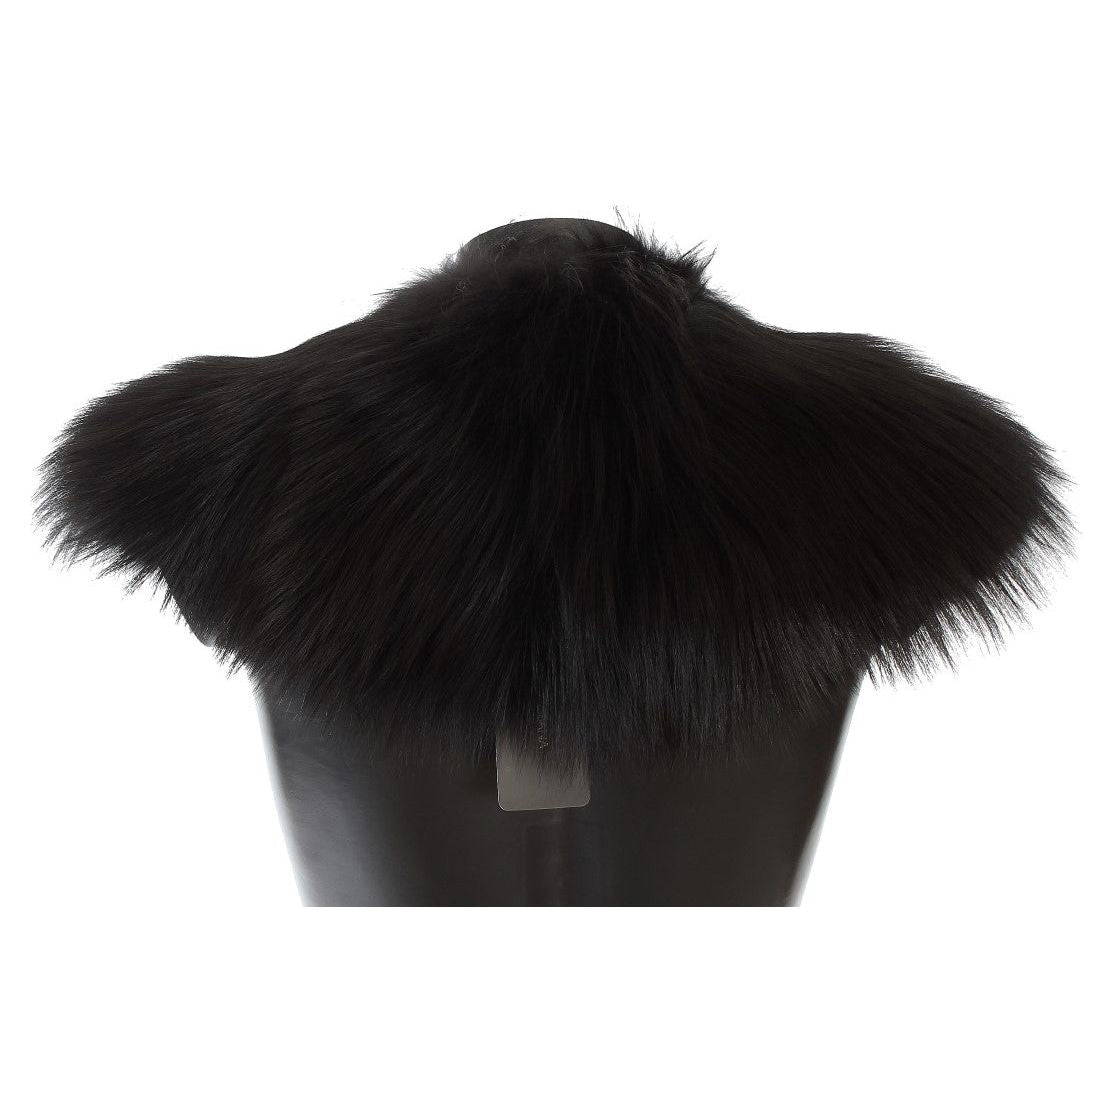 Dolce & Gabbana Black Fox Fur Chic Shoulder Wrap Fur Scarves black-fox-fur-collar-scarf